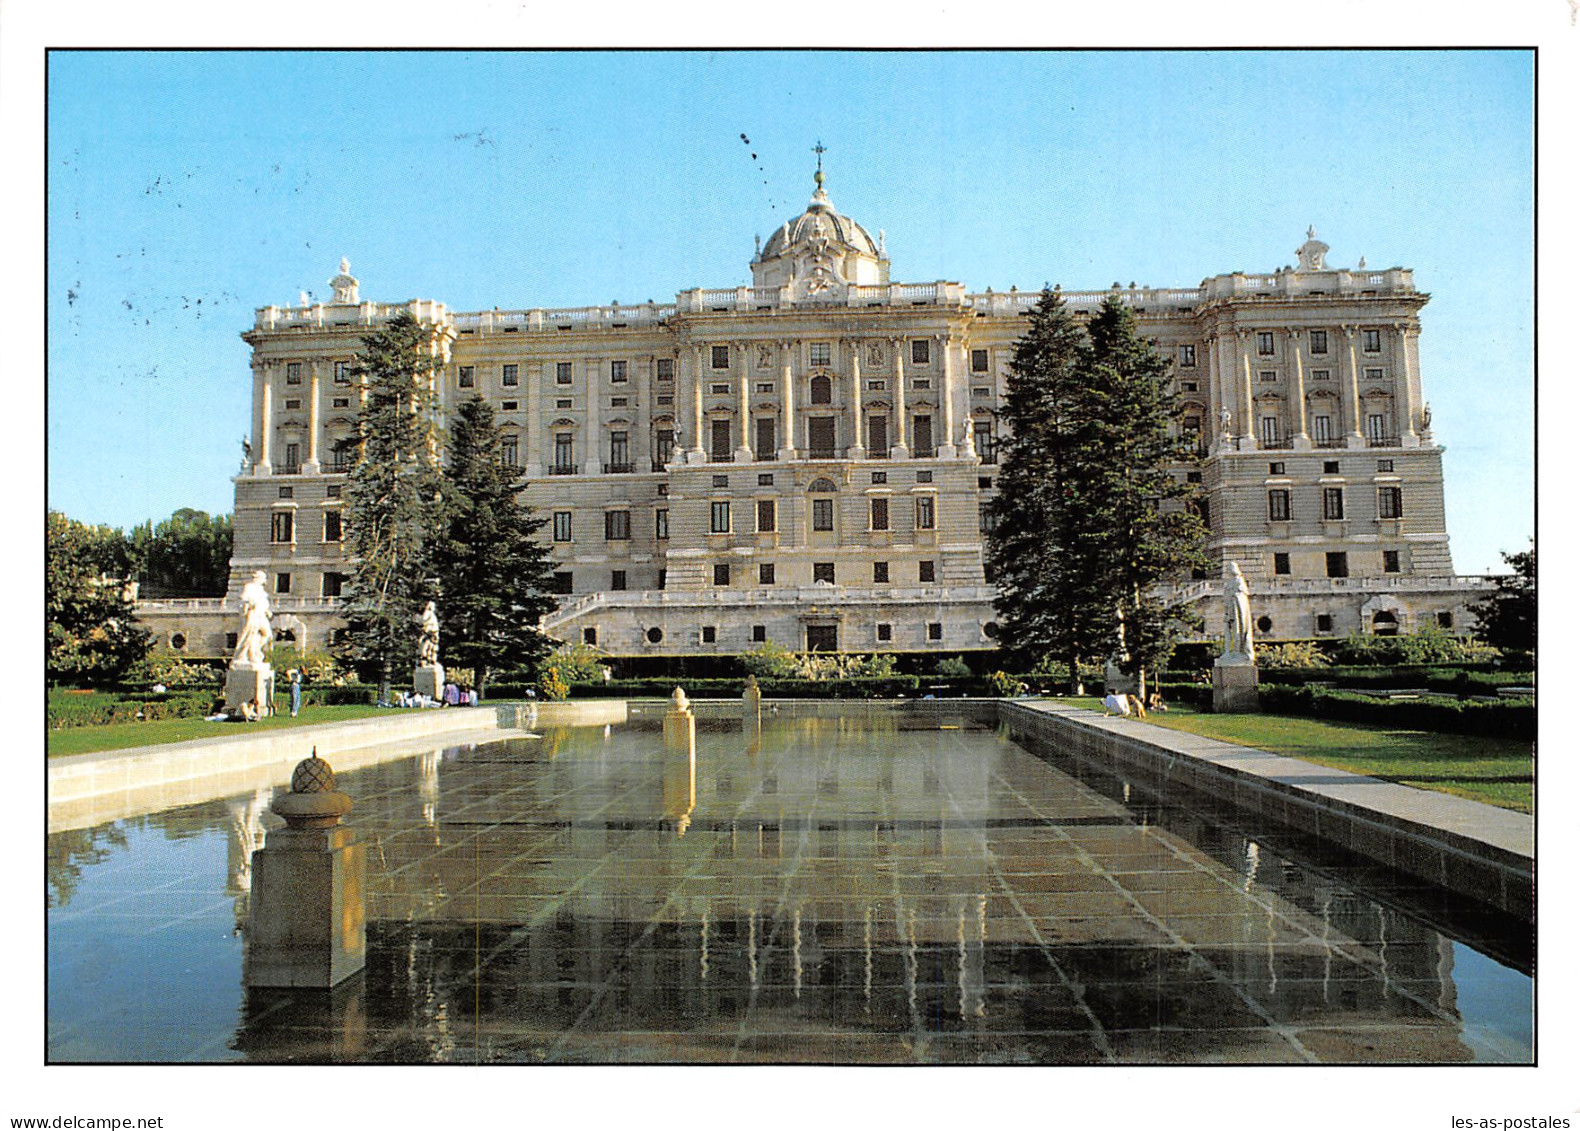 ESPAGNE MADRID - Madrid